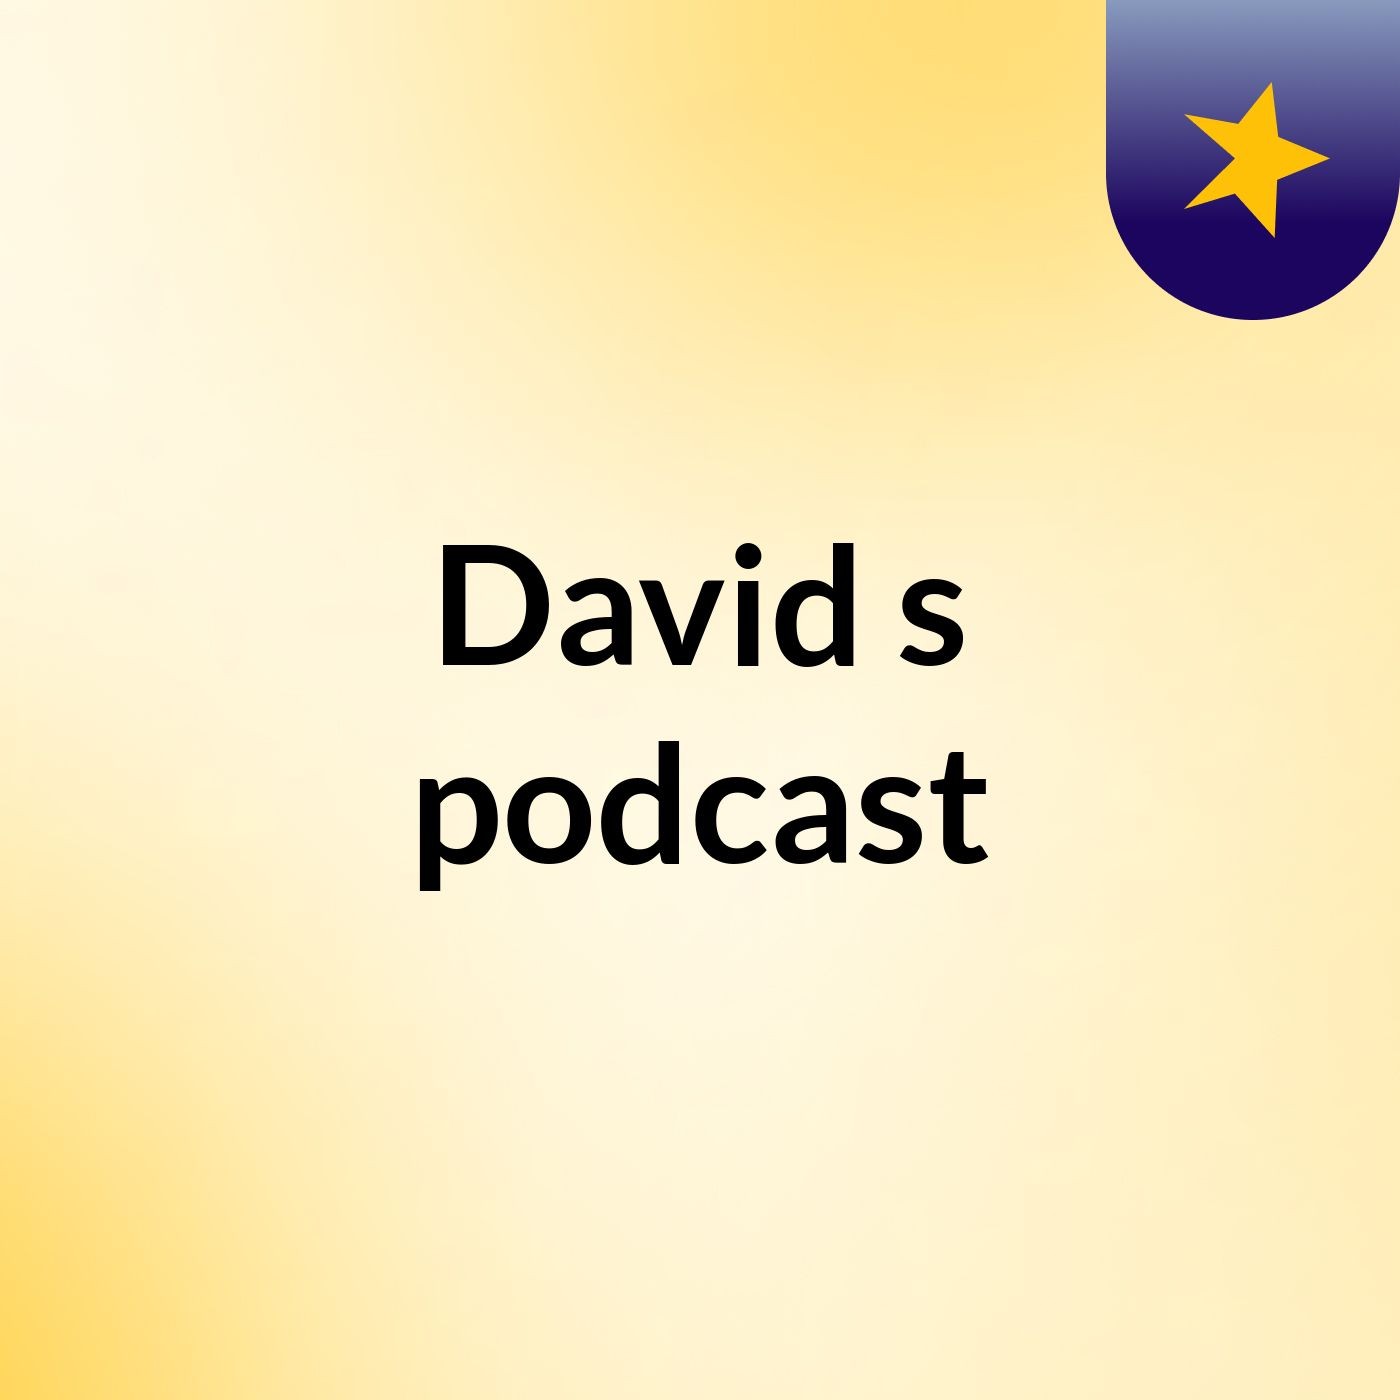 David's podcast